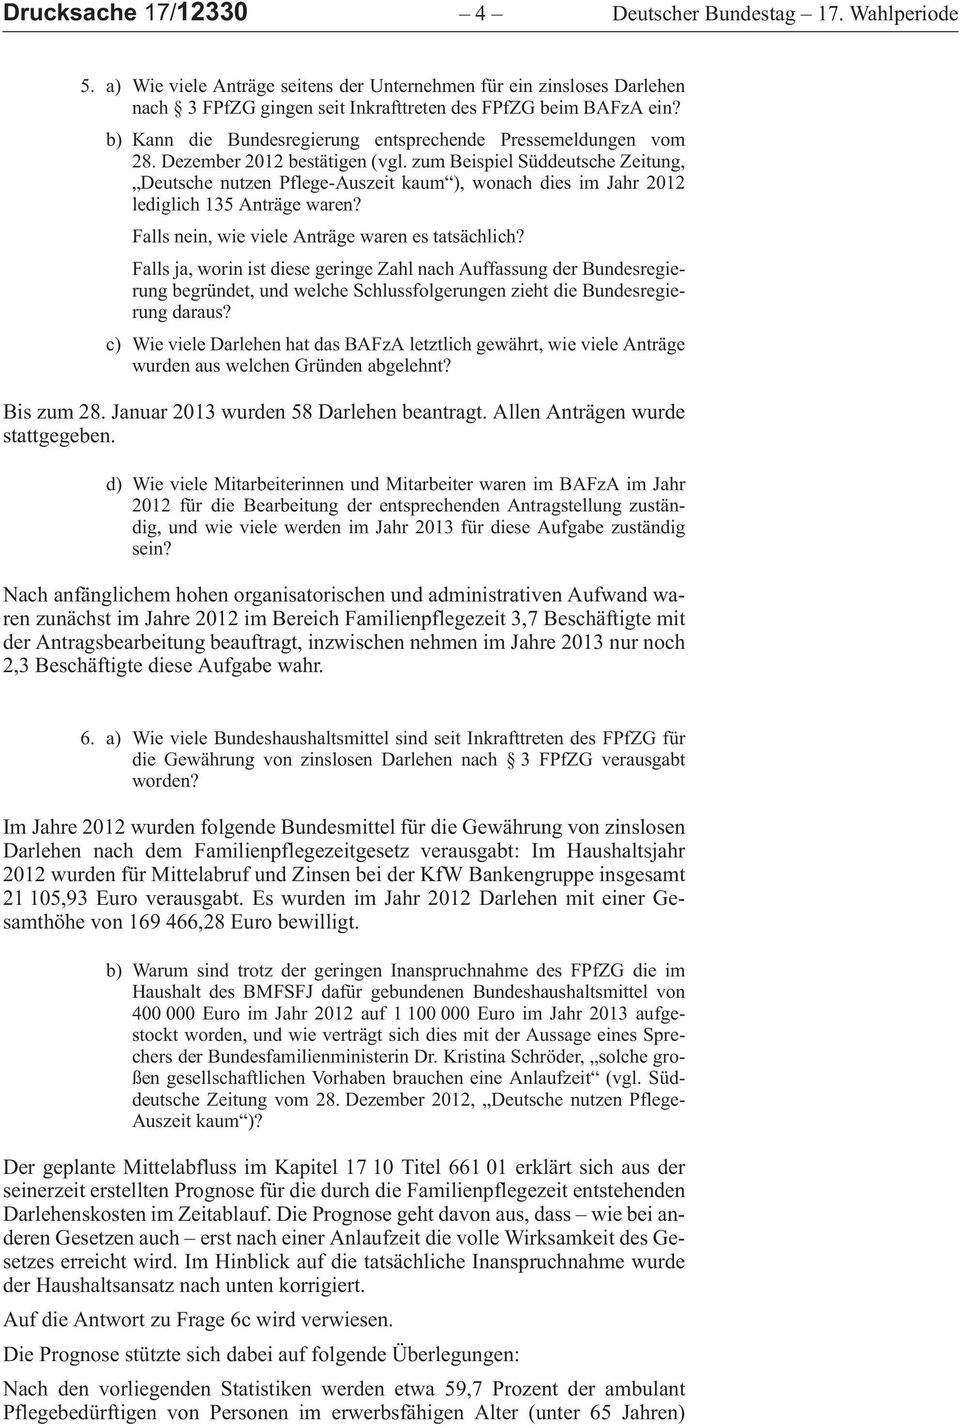 zumbeispielsüddeutschezeitung, DeutschenutzenPflege-Auszeitkaum ),wonachdiesimjahr2012 lediglich 135 Anträge waren? Falls nein, wie viele Anträge waren es tatsächlich?